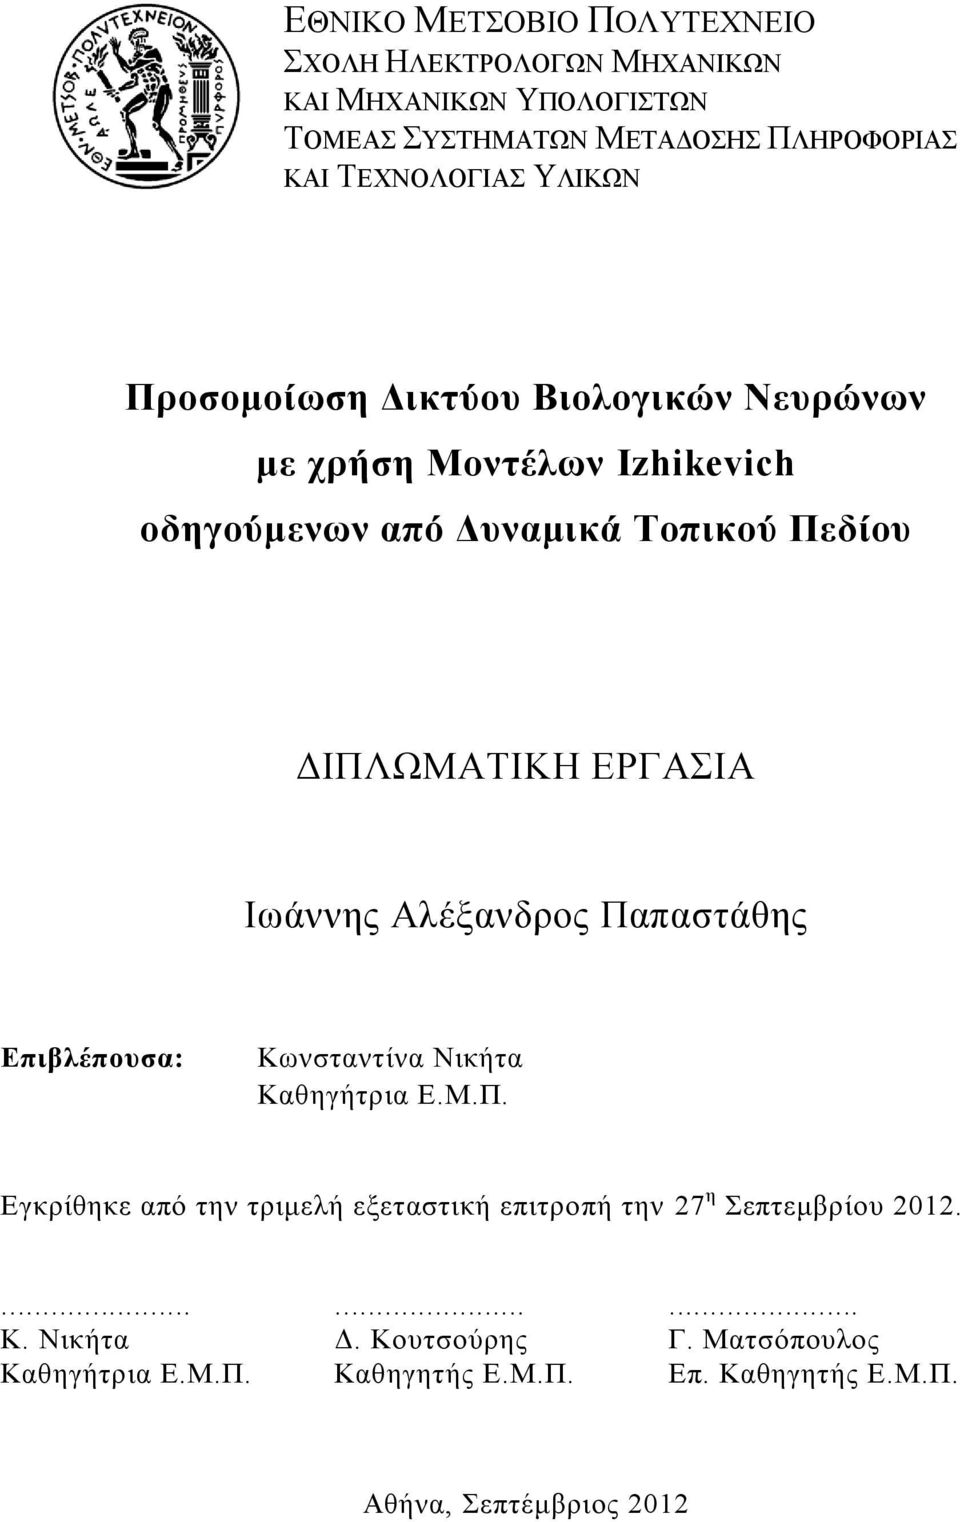 Ιωάννης Αλέξανδρος Παπαστάθης Επιβλέπουσα: Κωνσταντίνα Νικήτα Καθηγήτρια Ε.Μ.Π. Εγκρίθηκε από την τριμελή εξεταστική επιτροπή την 27 η Σεπτεμβρίου 2012.